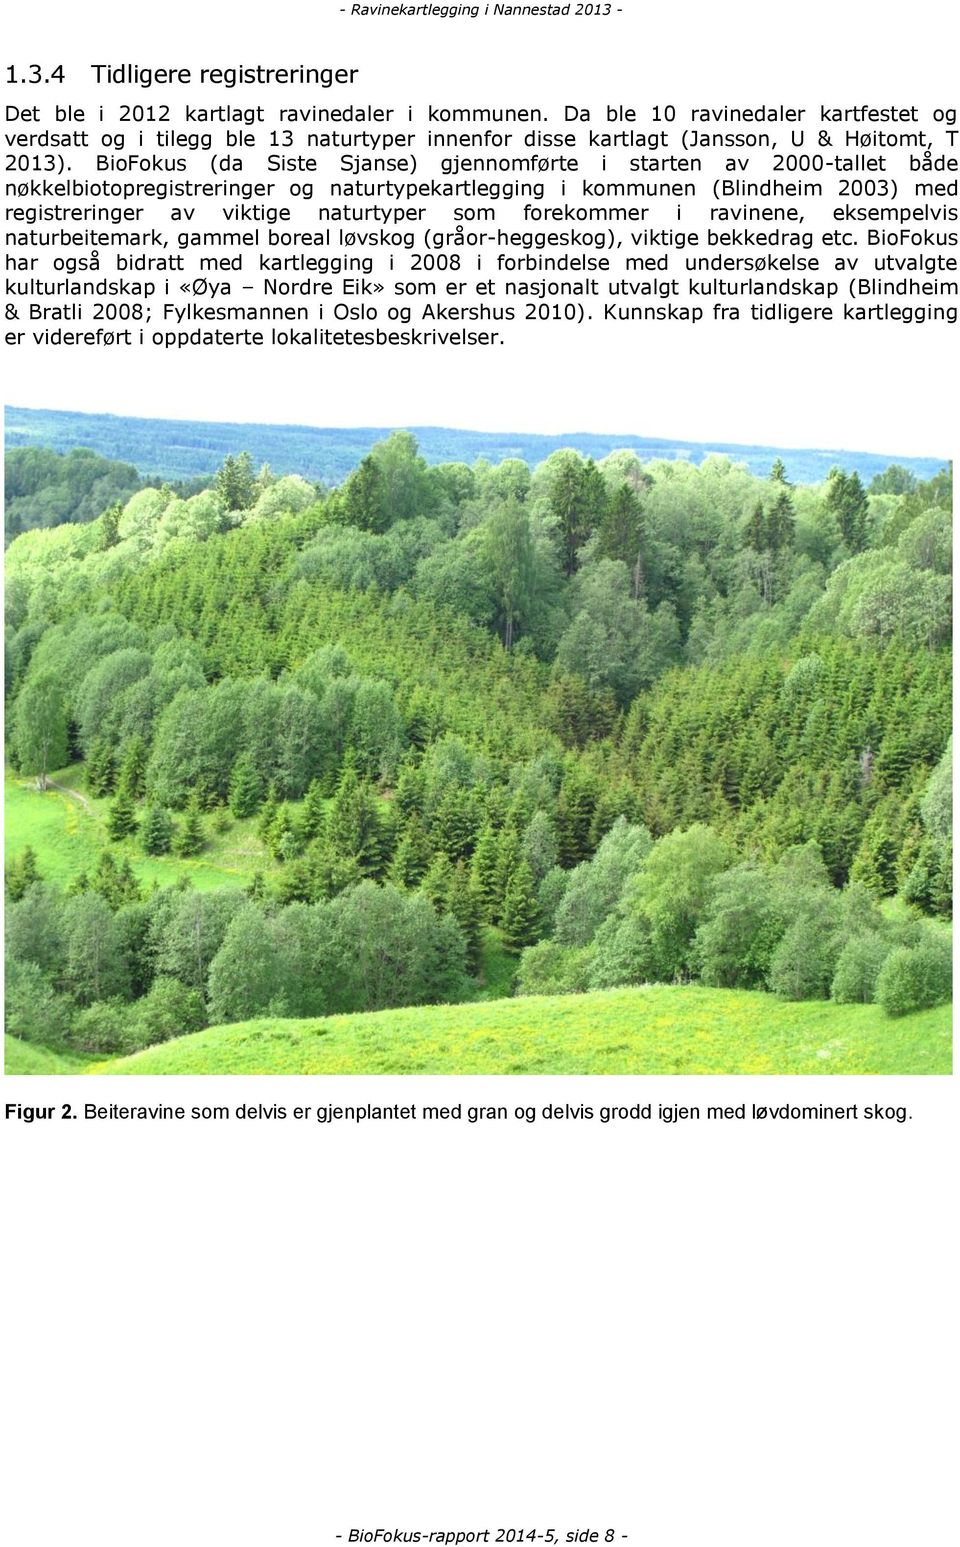 BioFokus (da Siste Sjanse) gjennomførte i starten av 2000-tallet både nøkkelbiotopregistreringer og naturtypekartlegging i kommunen (Blindheim 2003) med registreringer av viktige naturtyper som